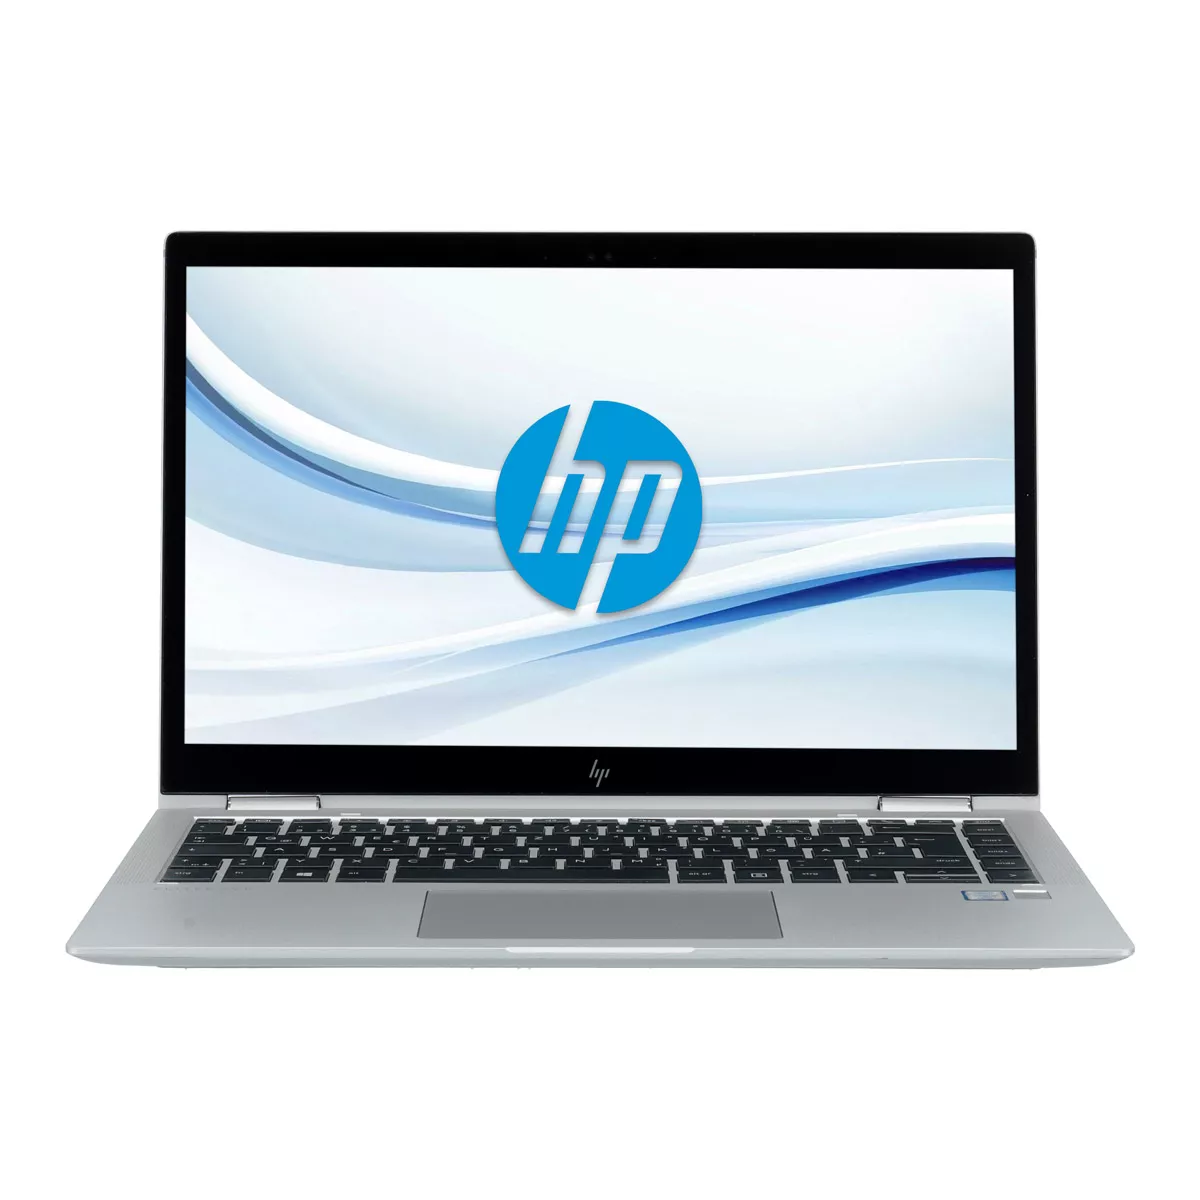 HP EliteBook x360 1040 G6 Core i5 8365U 16 GB 500 GB M.2 nVME SSD Touch Webcam A+